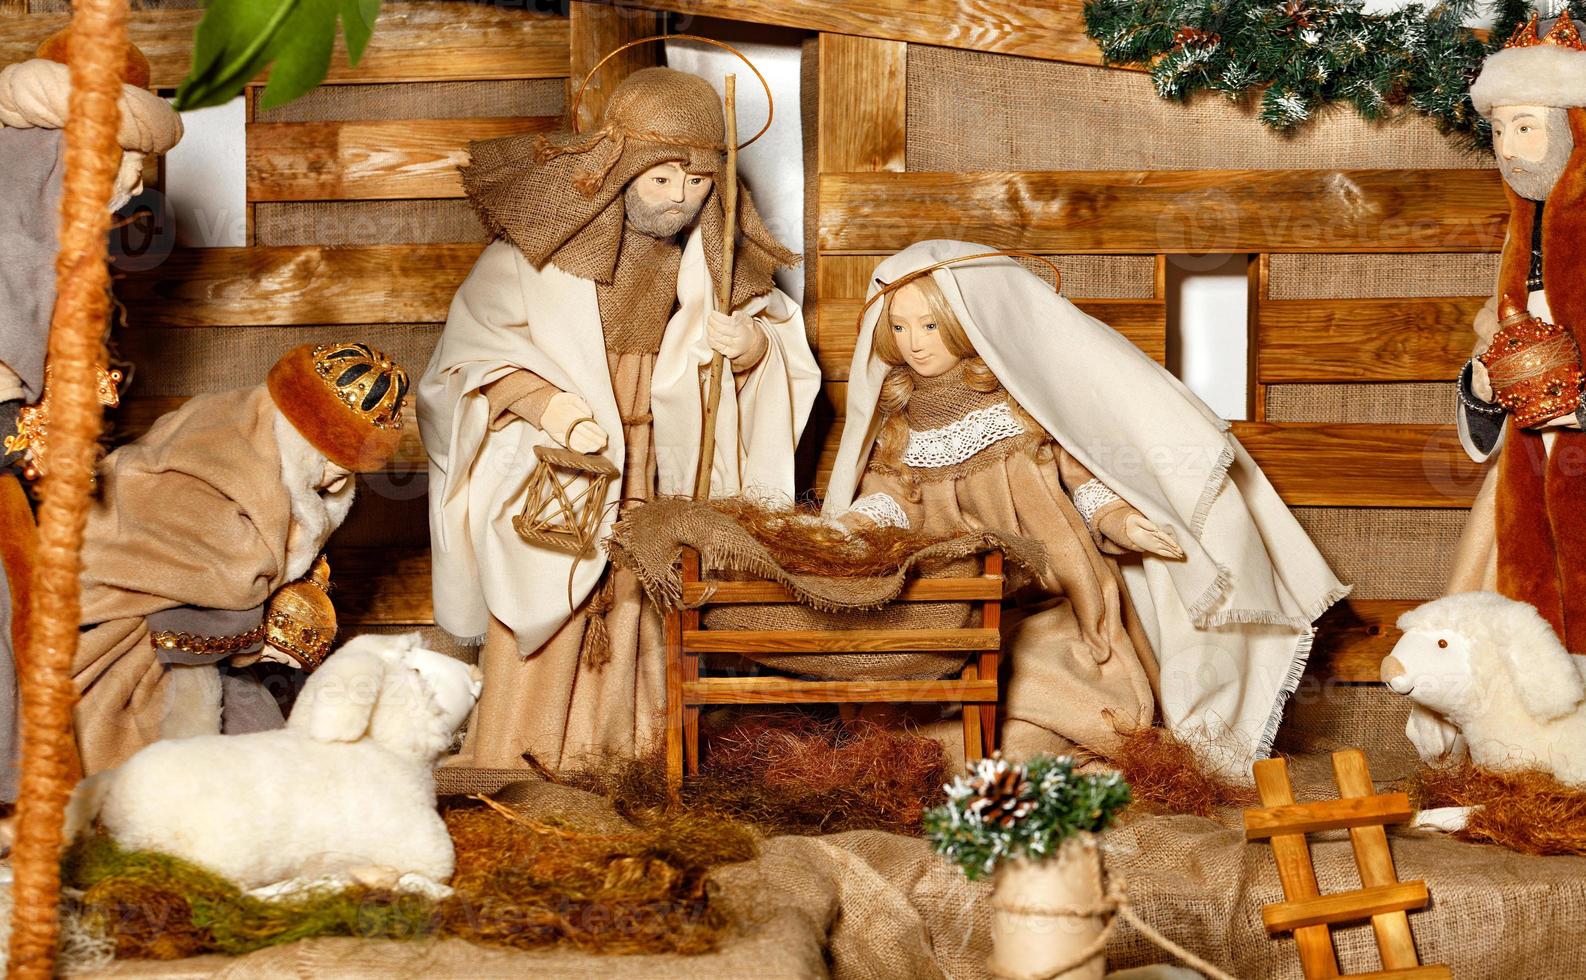 composição de fantoches da natividade de cristo com jesus, virgem maria, joseph, uma manjedoura, palha e os magos que vieram. foto